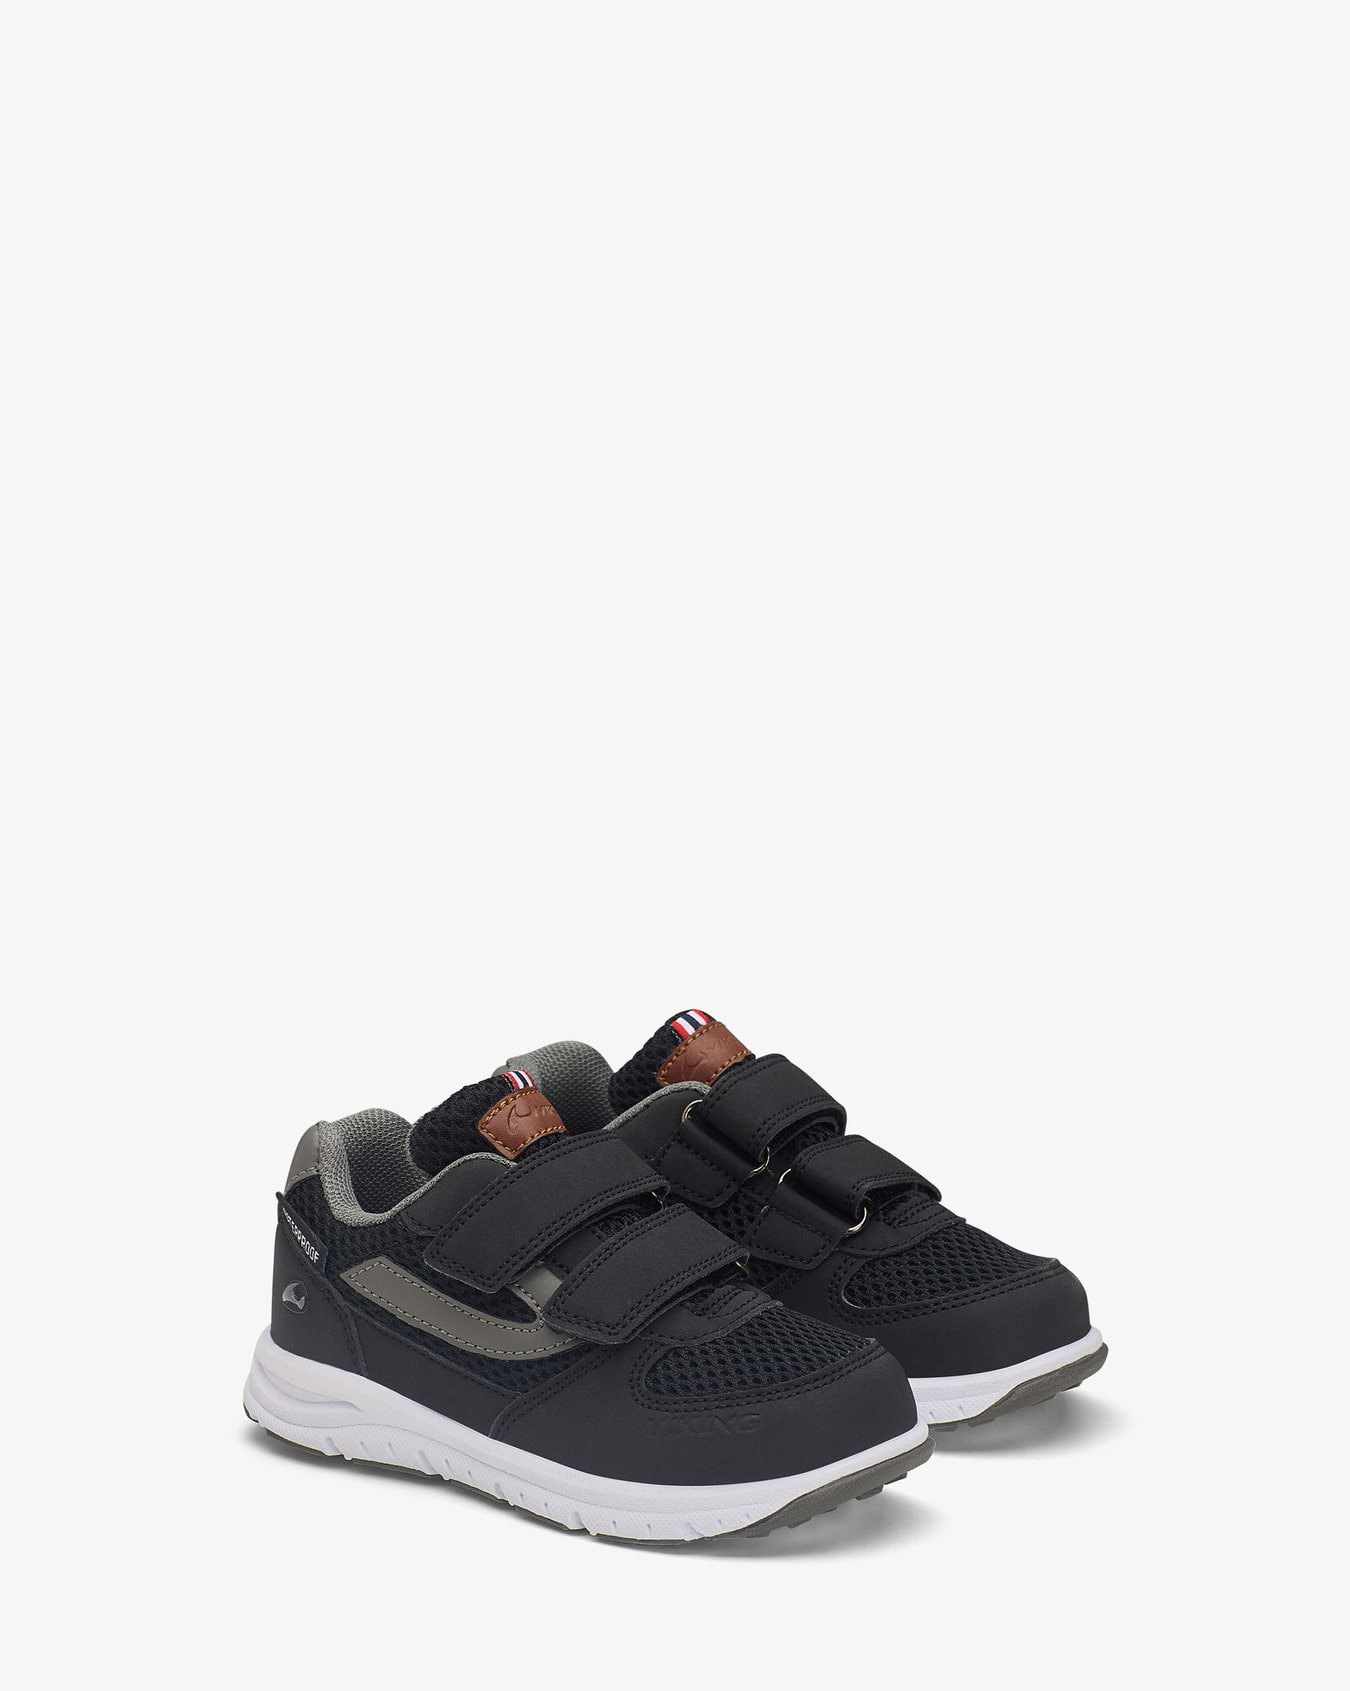 Hovet WP Sneakers Black Grey